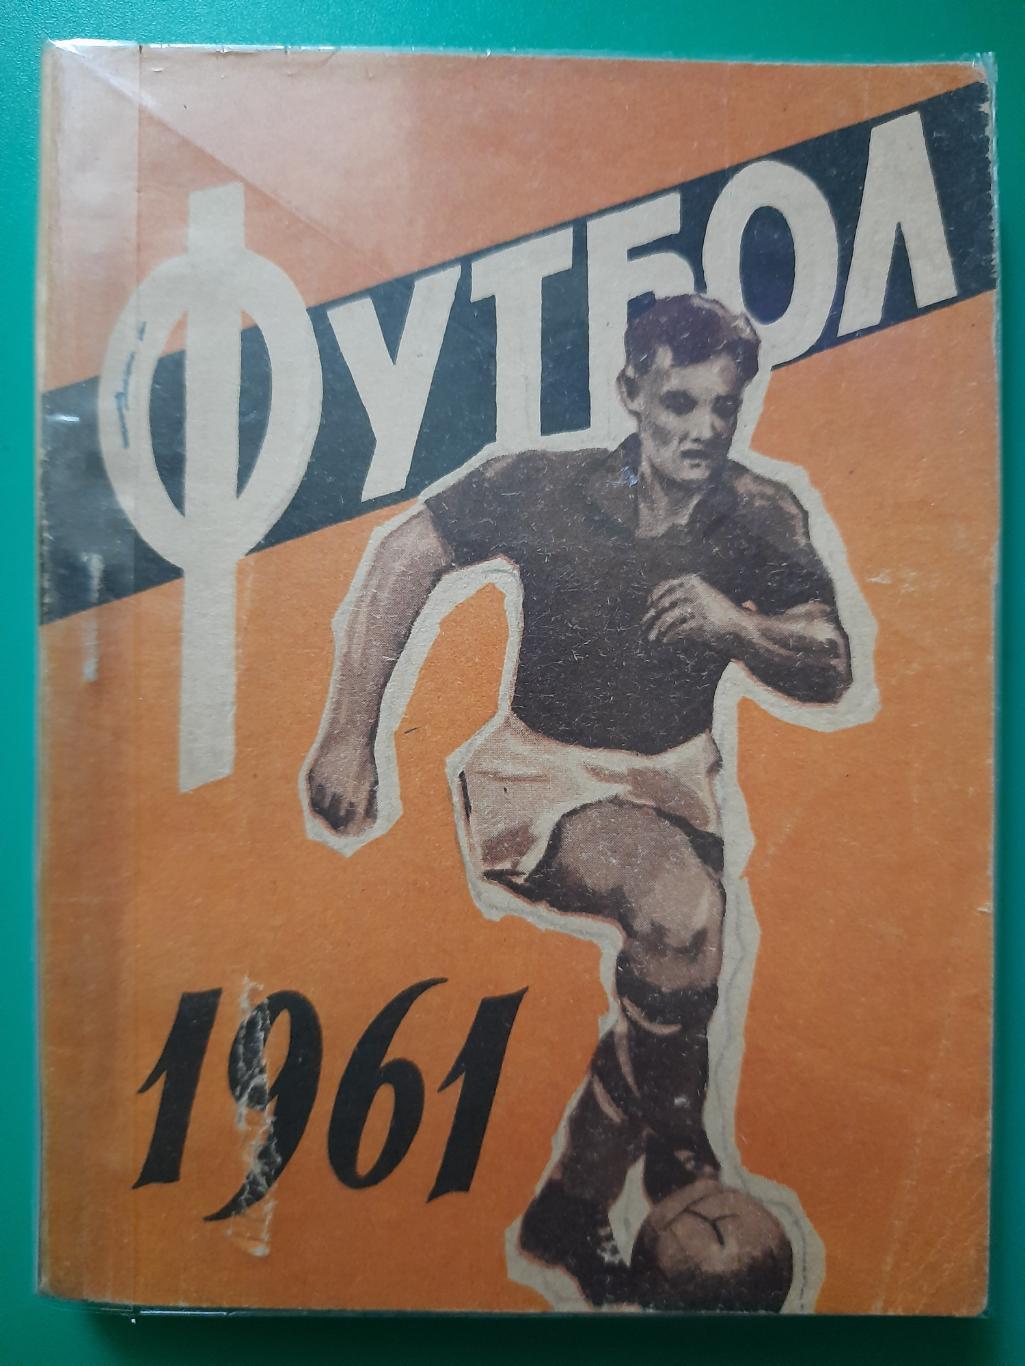 календарь-справочник,Футбол 1961, Киев.